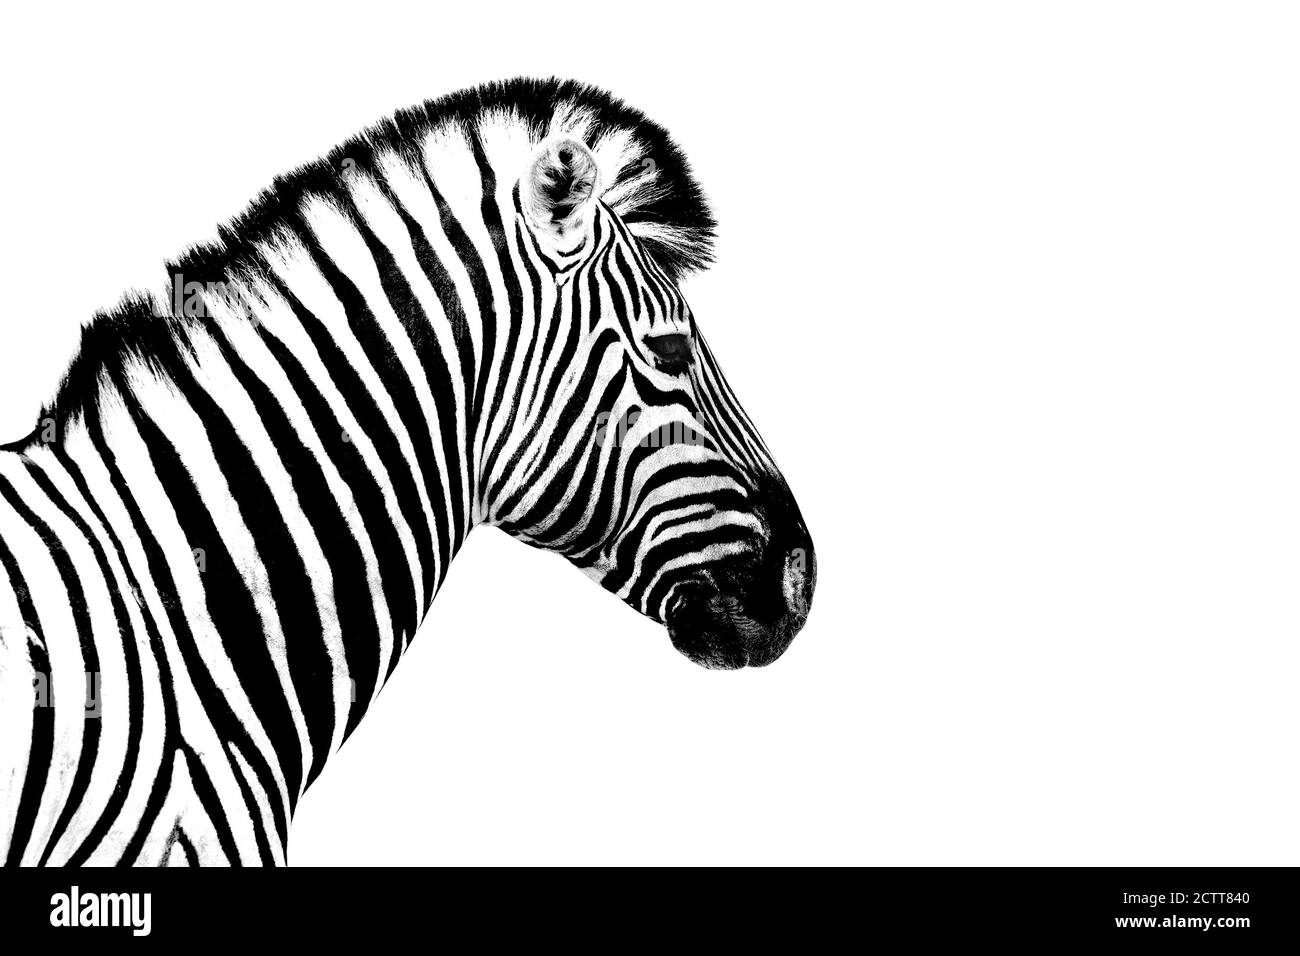 Ein Zebra weißen Hintergrund isoliert Nahaufnahme Seitenansicht, Einzel Zebra Kopf Profil Porträt, schwarz-weiß Kunst Fotografie, gestreiften Tier Muster Stockfoto